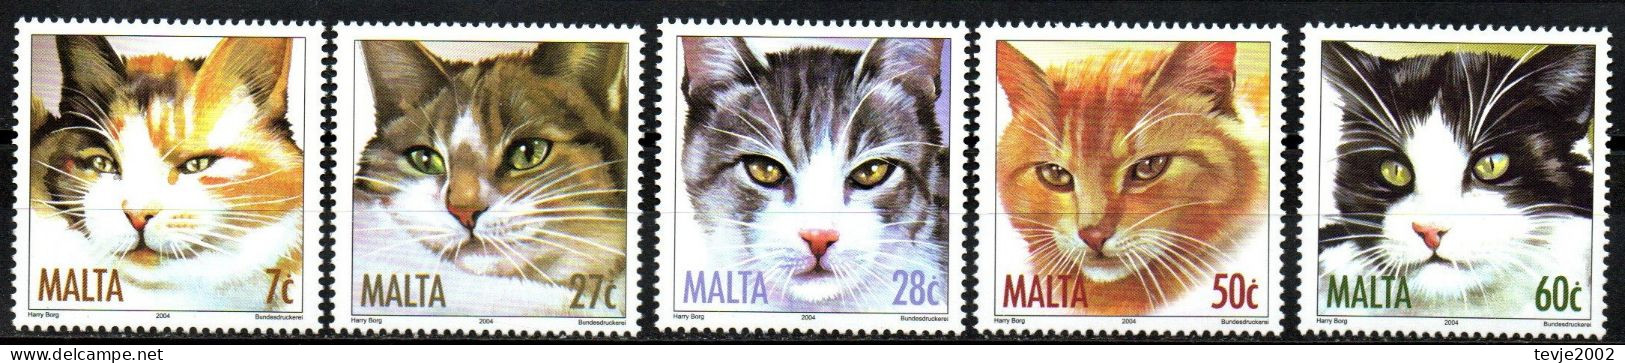 Malta 2004 - Mi.Nr. 1319 - 1323 - Postfrisch MNH - Tiere Animals Katzen Cats - Hauskatzen